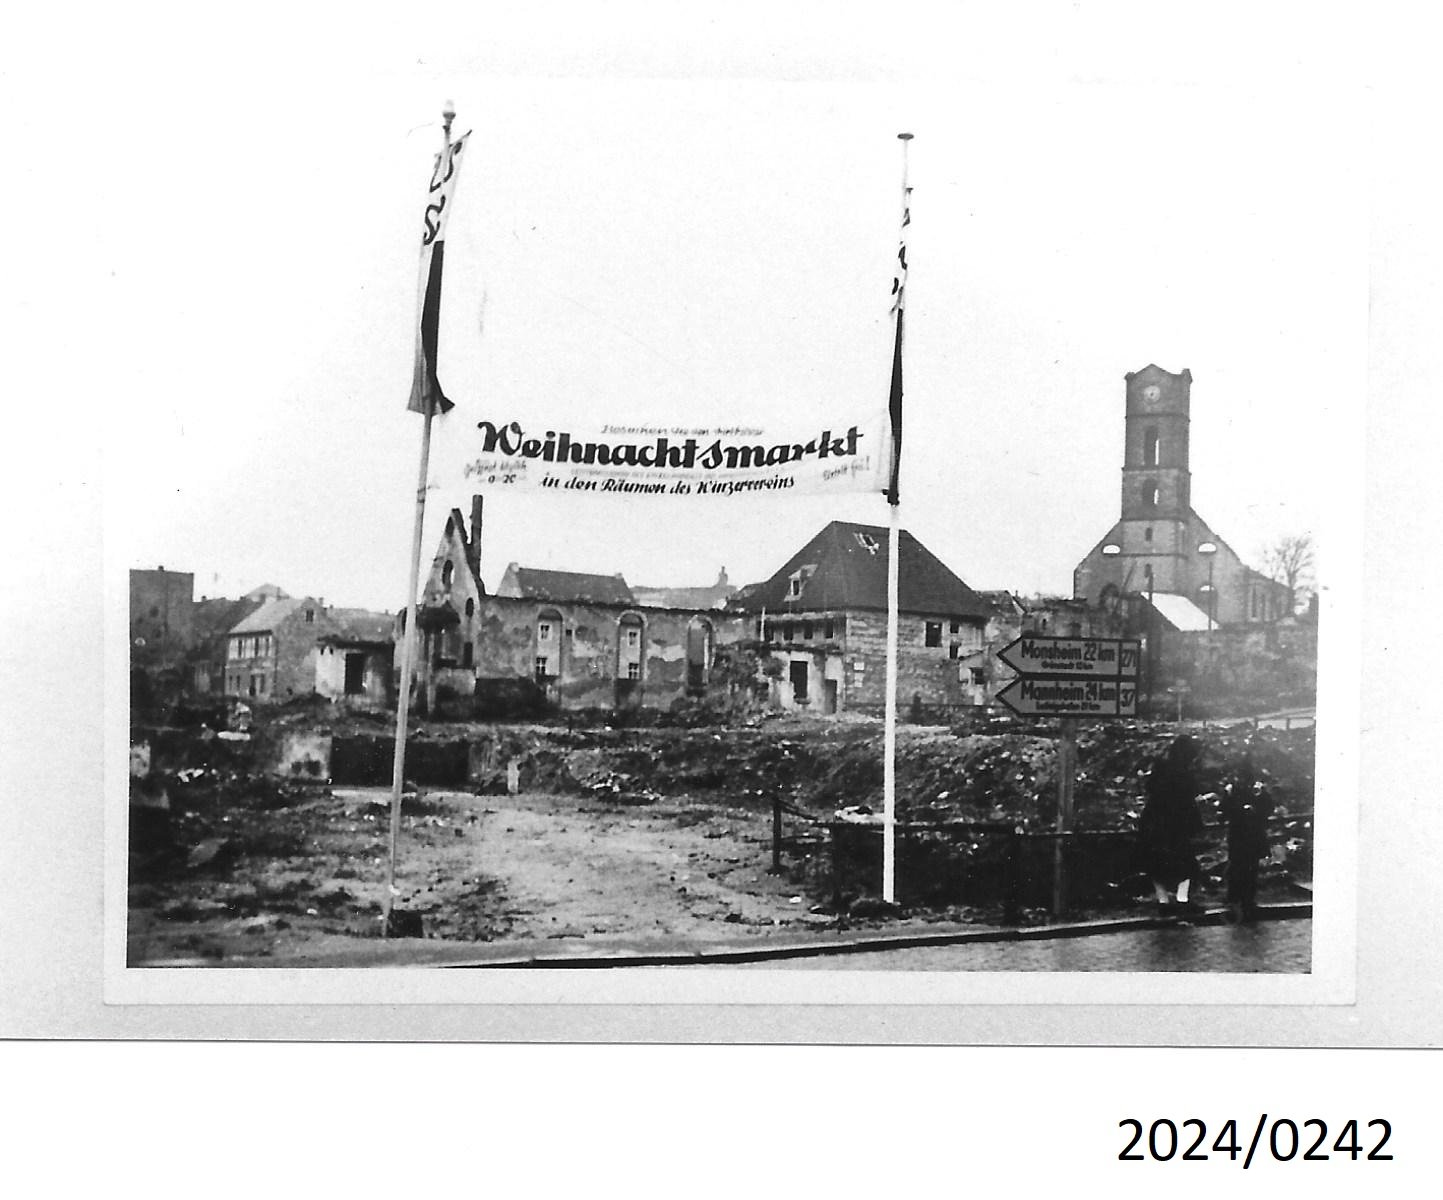 Bad Dürkheim, Teil der zerstörten Innenstadt, Ende 1940er Jahre (Stadtmuseum Bad Dürkheim im Kulturzentrum Haus Catoir CC BY-NC-SA)